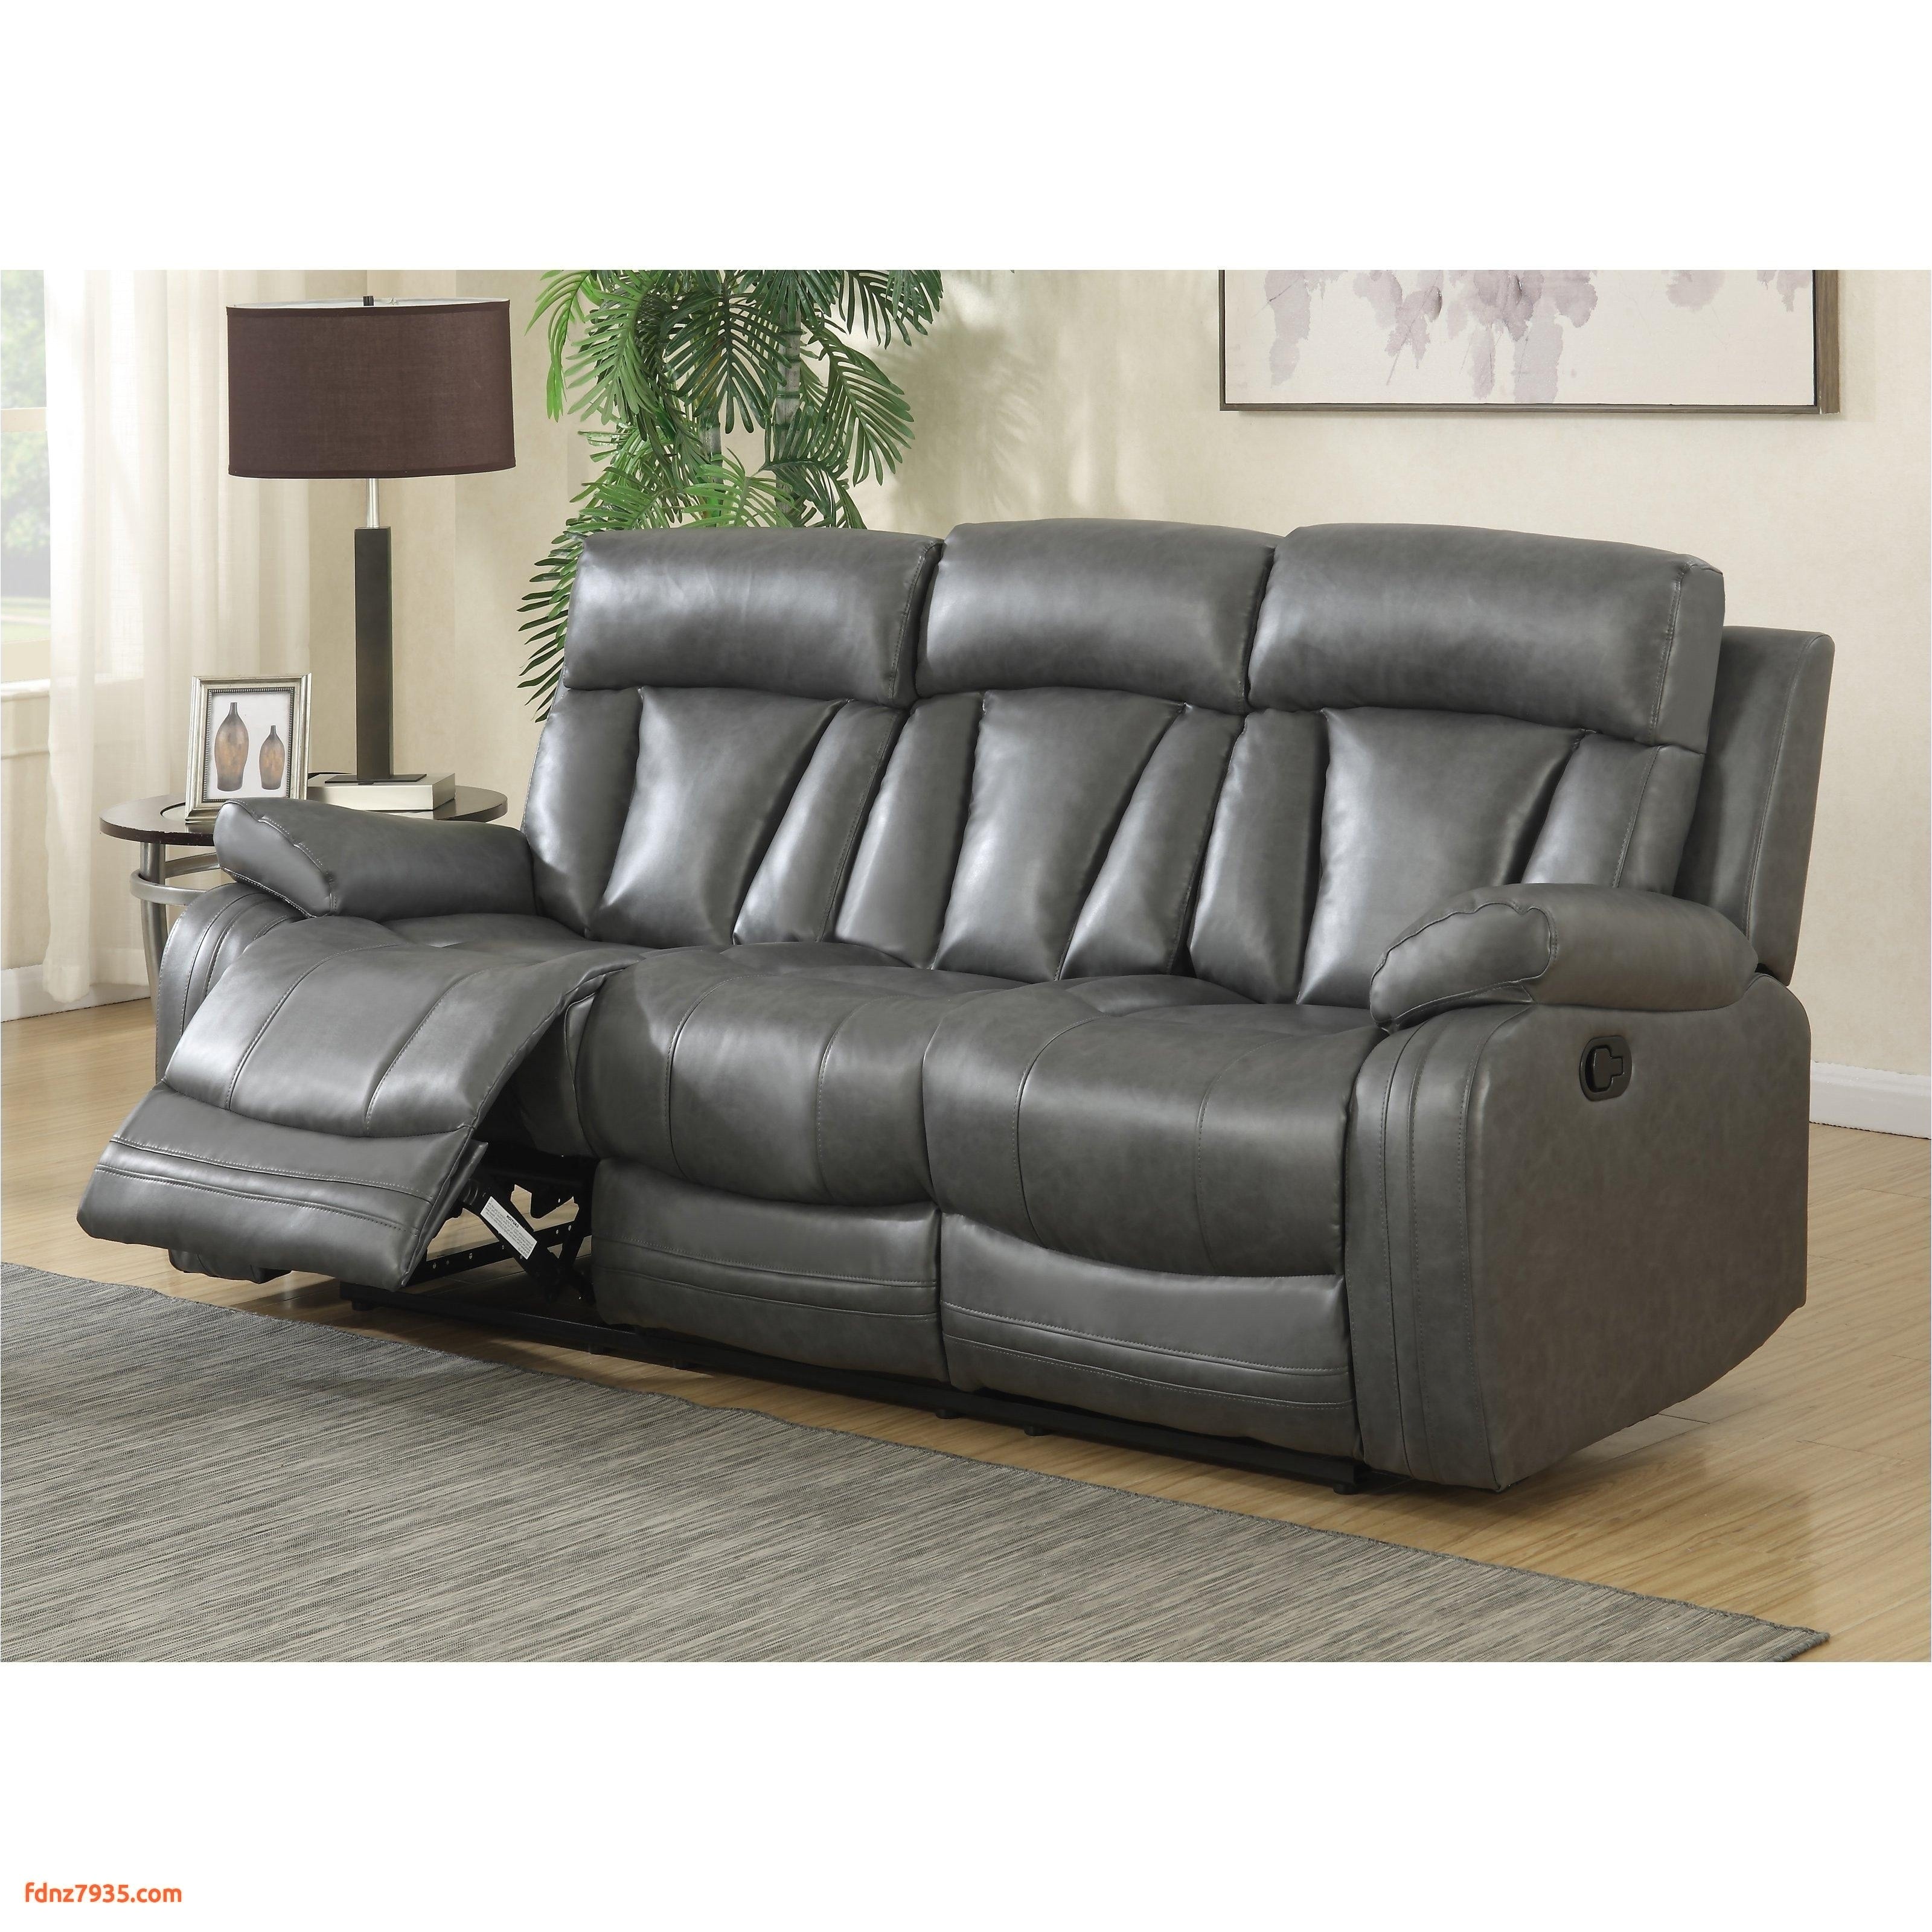 power reclining sofa and loveseat beautiful furniture gray reclining loveseat best tufted loveseat 0d